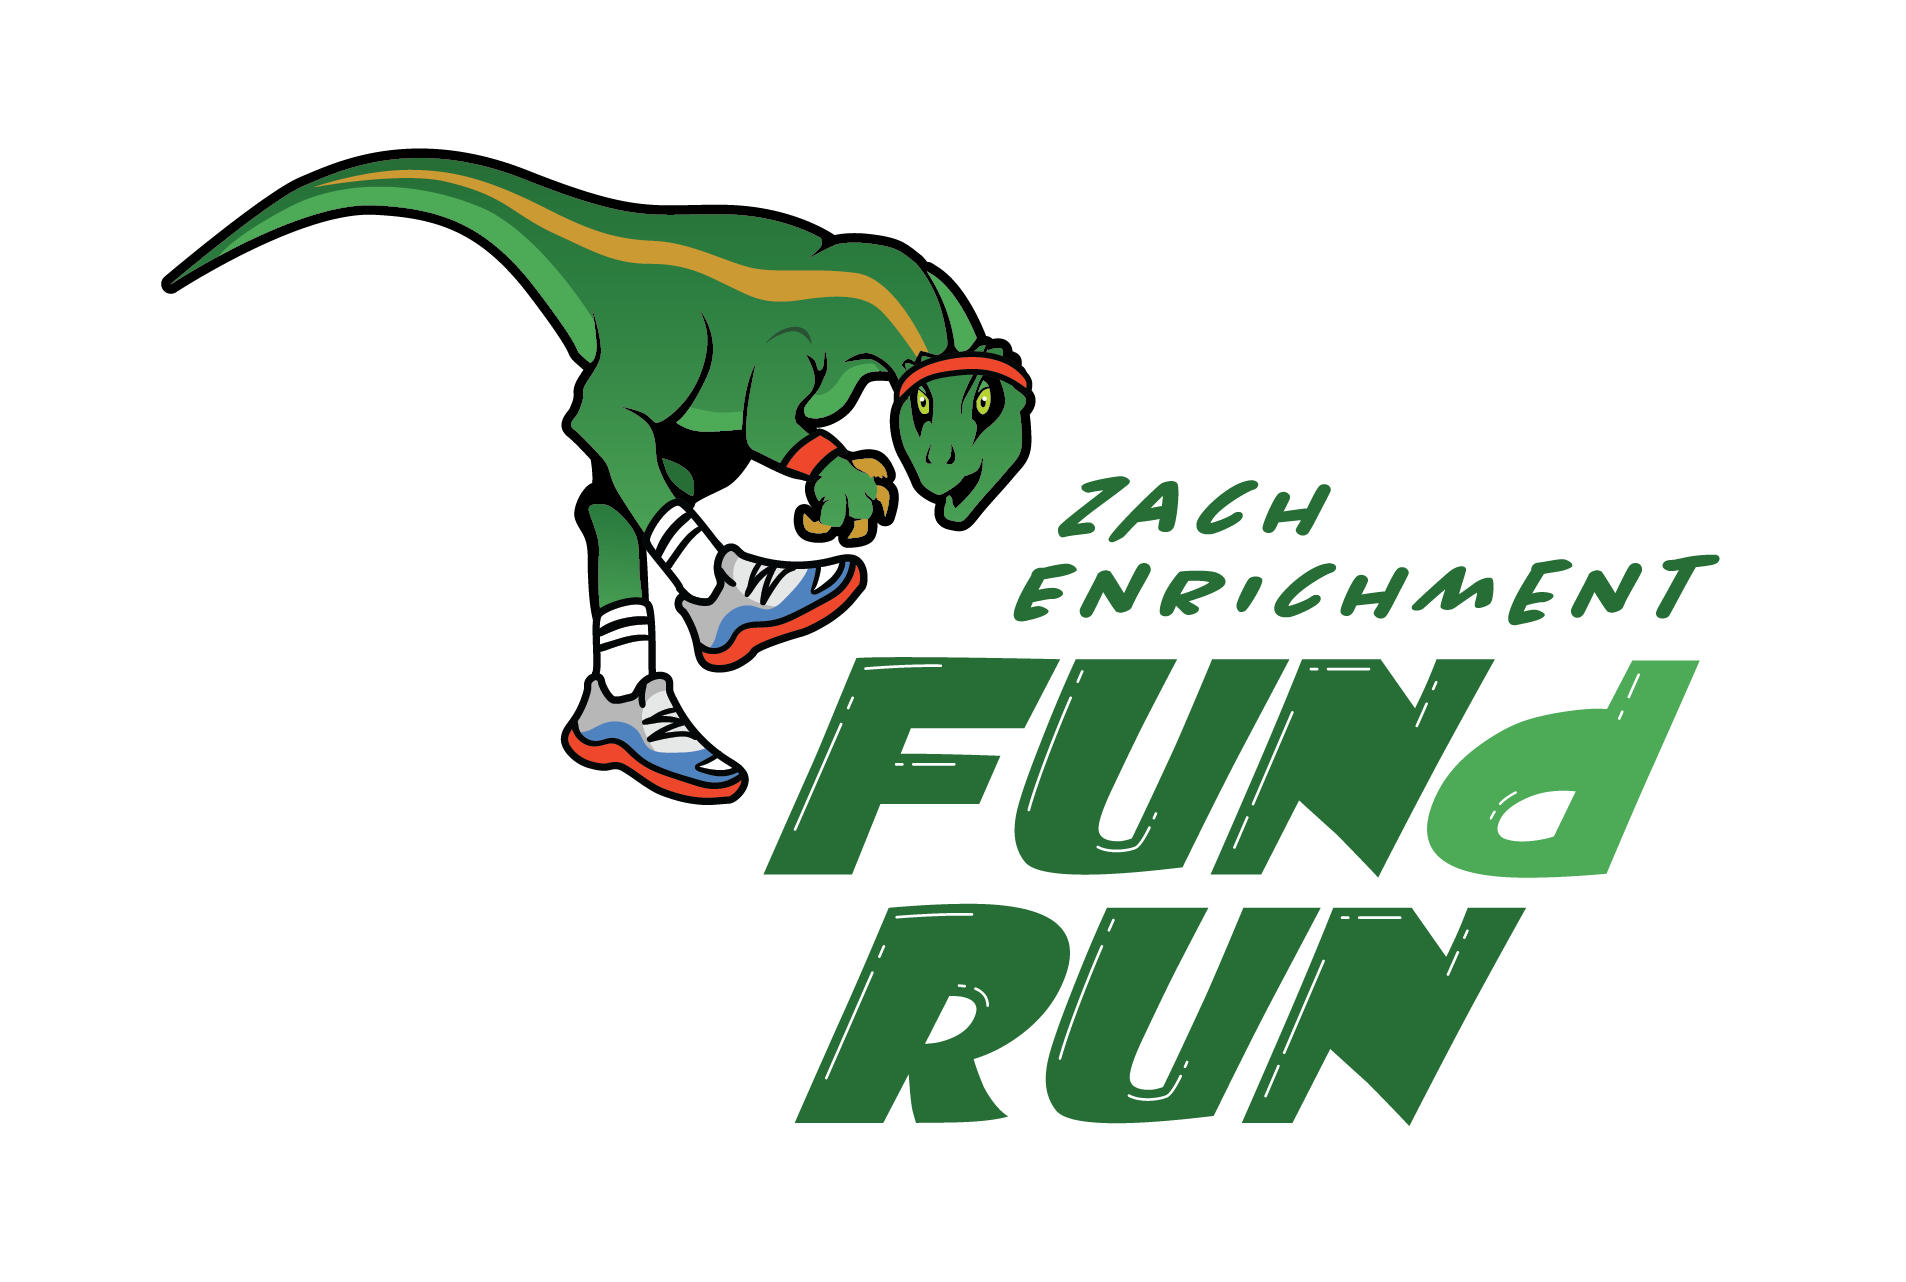 Zach FUNd Run